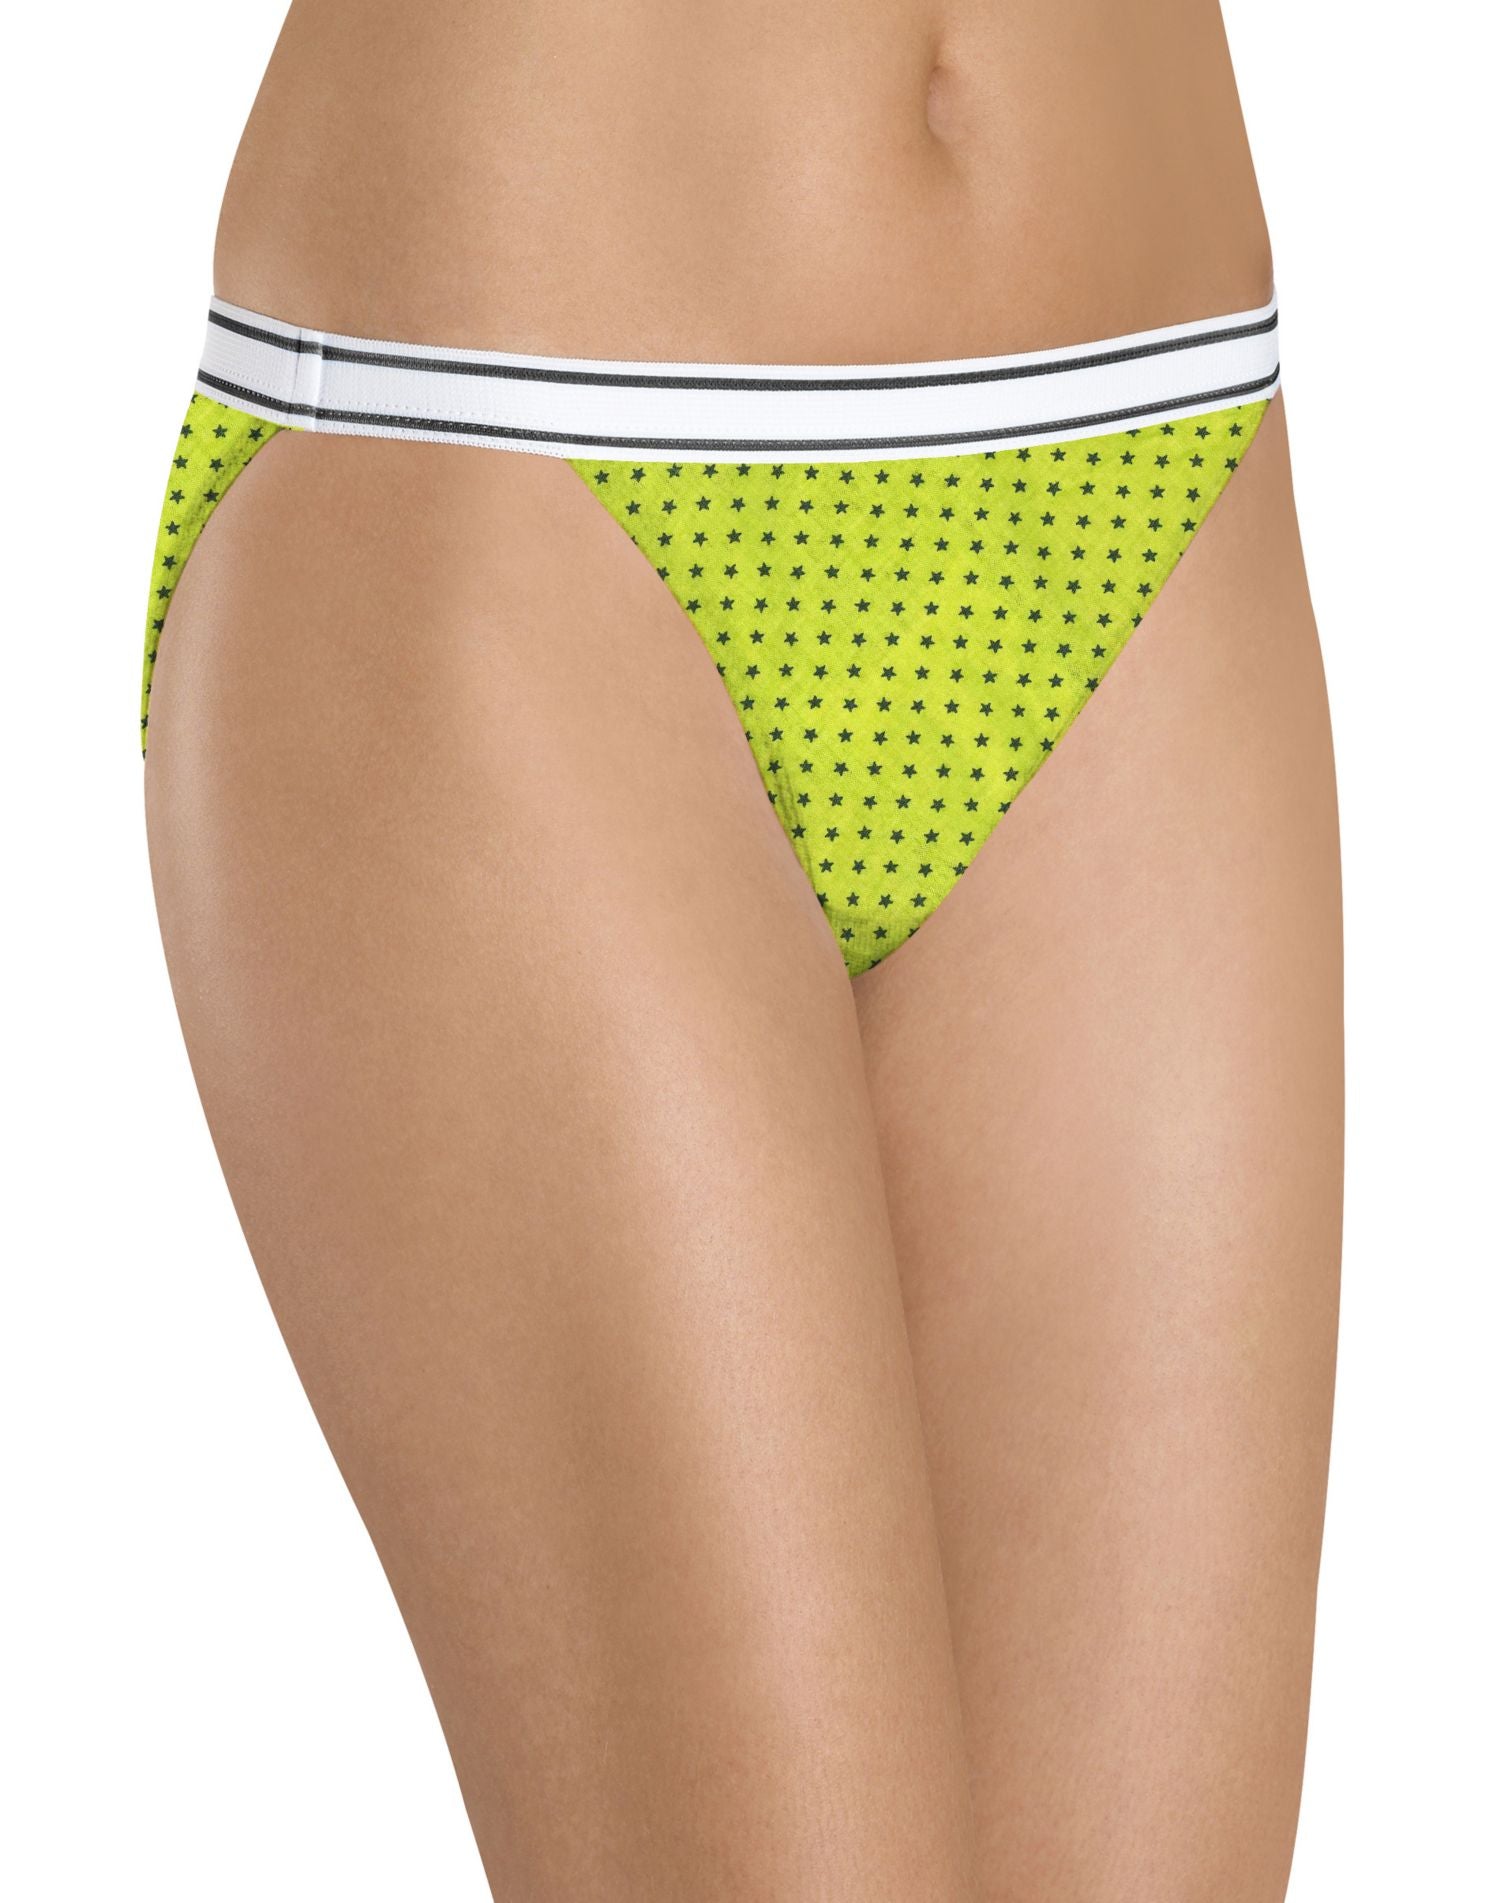 Hanes 6 Pack Bikinis Women's Underwear Solids & Prints